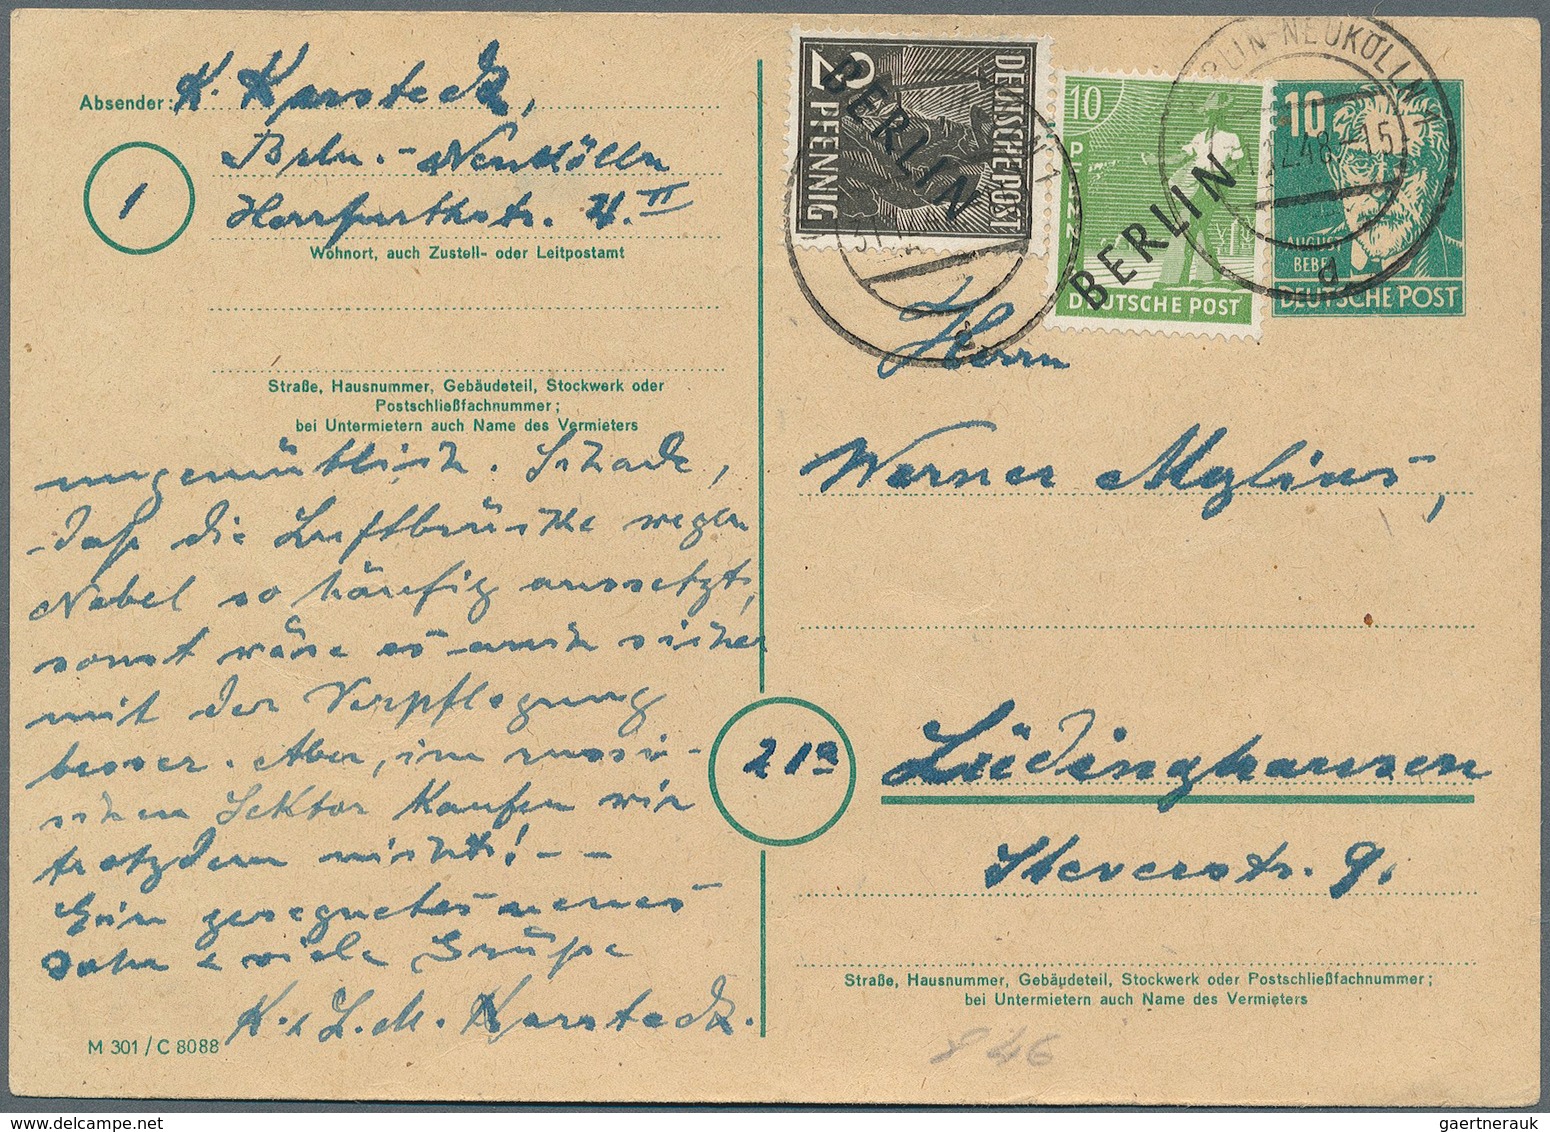 Deutschland: 1912/1945: interessante Partie Briefe und Ganzsachen, dabei ein leicht aufgerautes Hitl